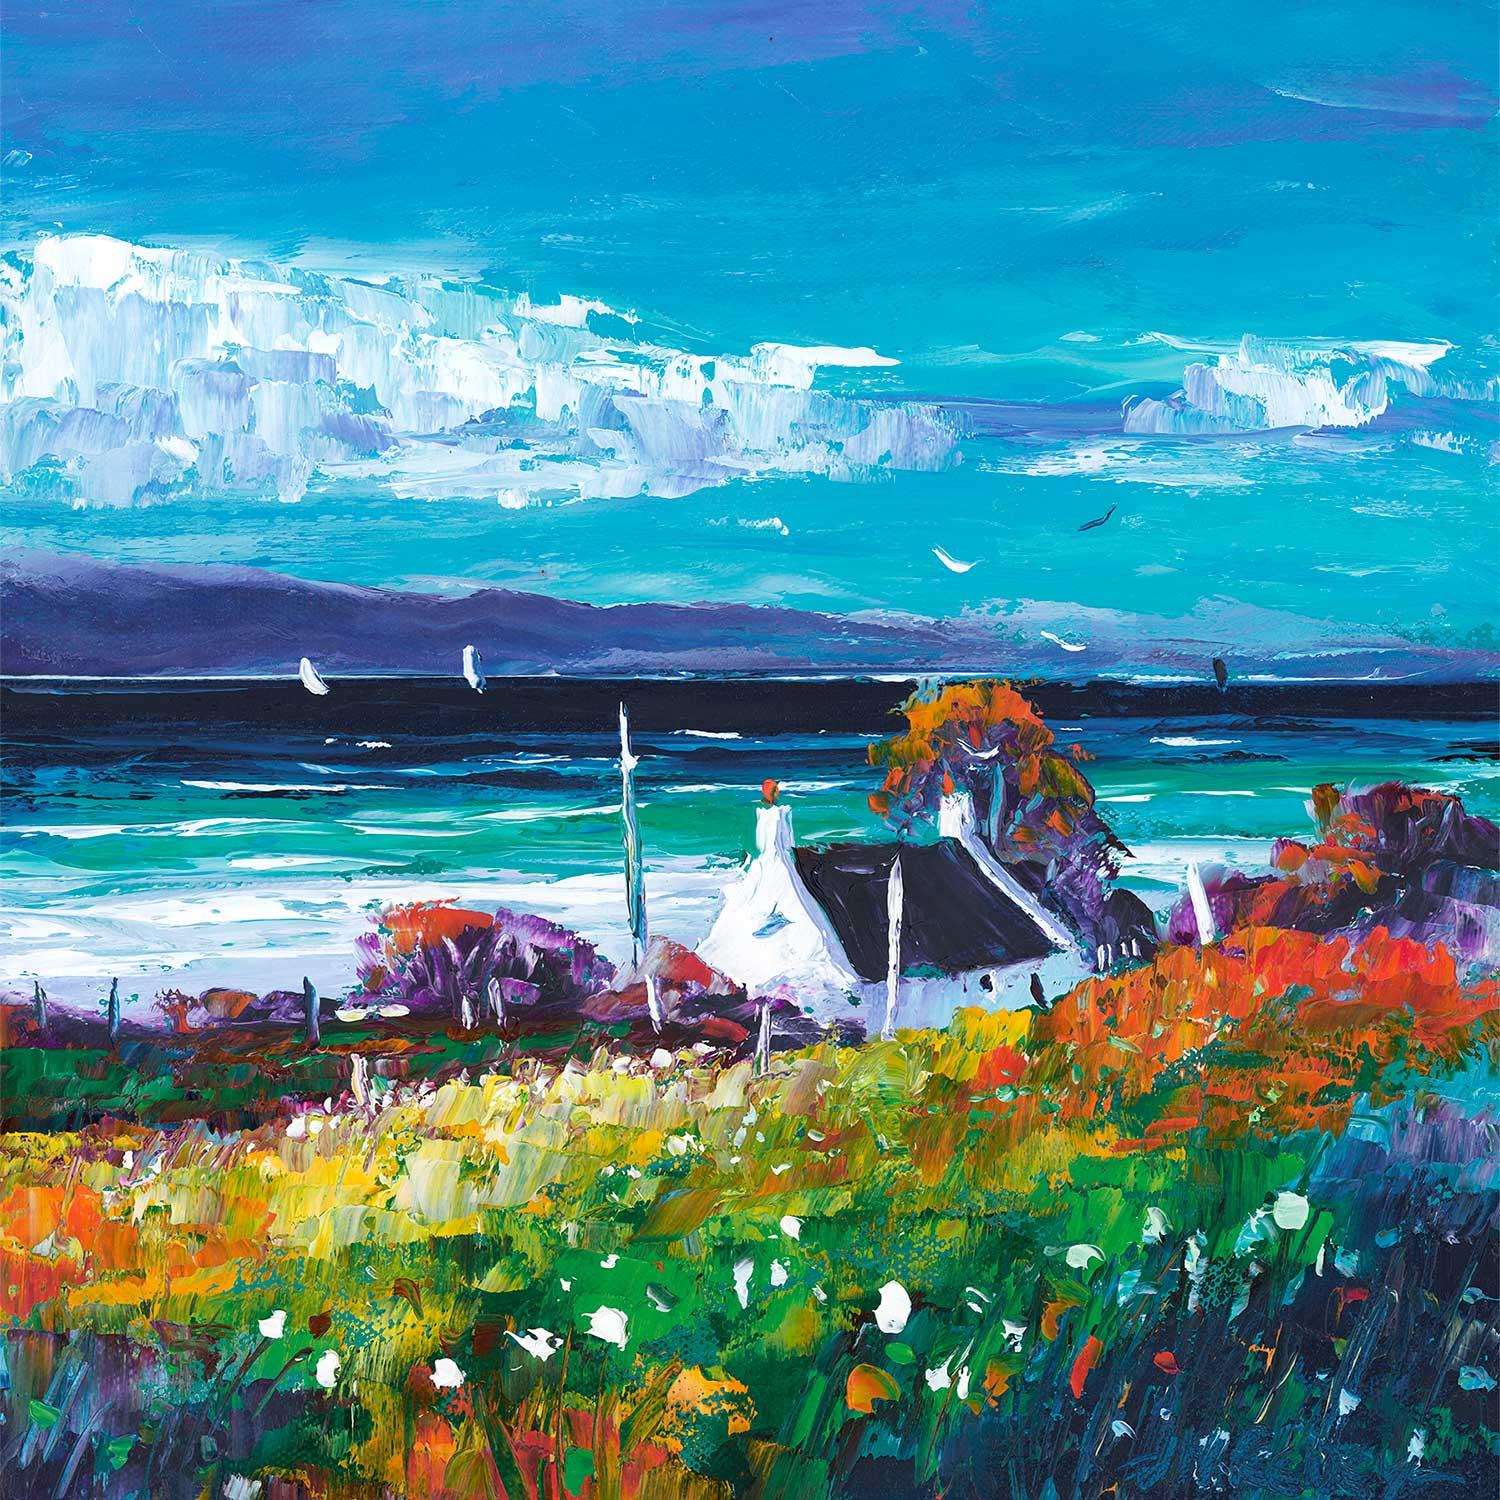 Bright Summer Breeze, Isle of Arran by Jean Feeney